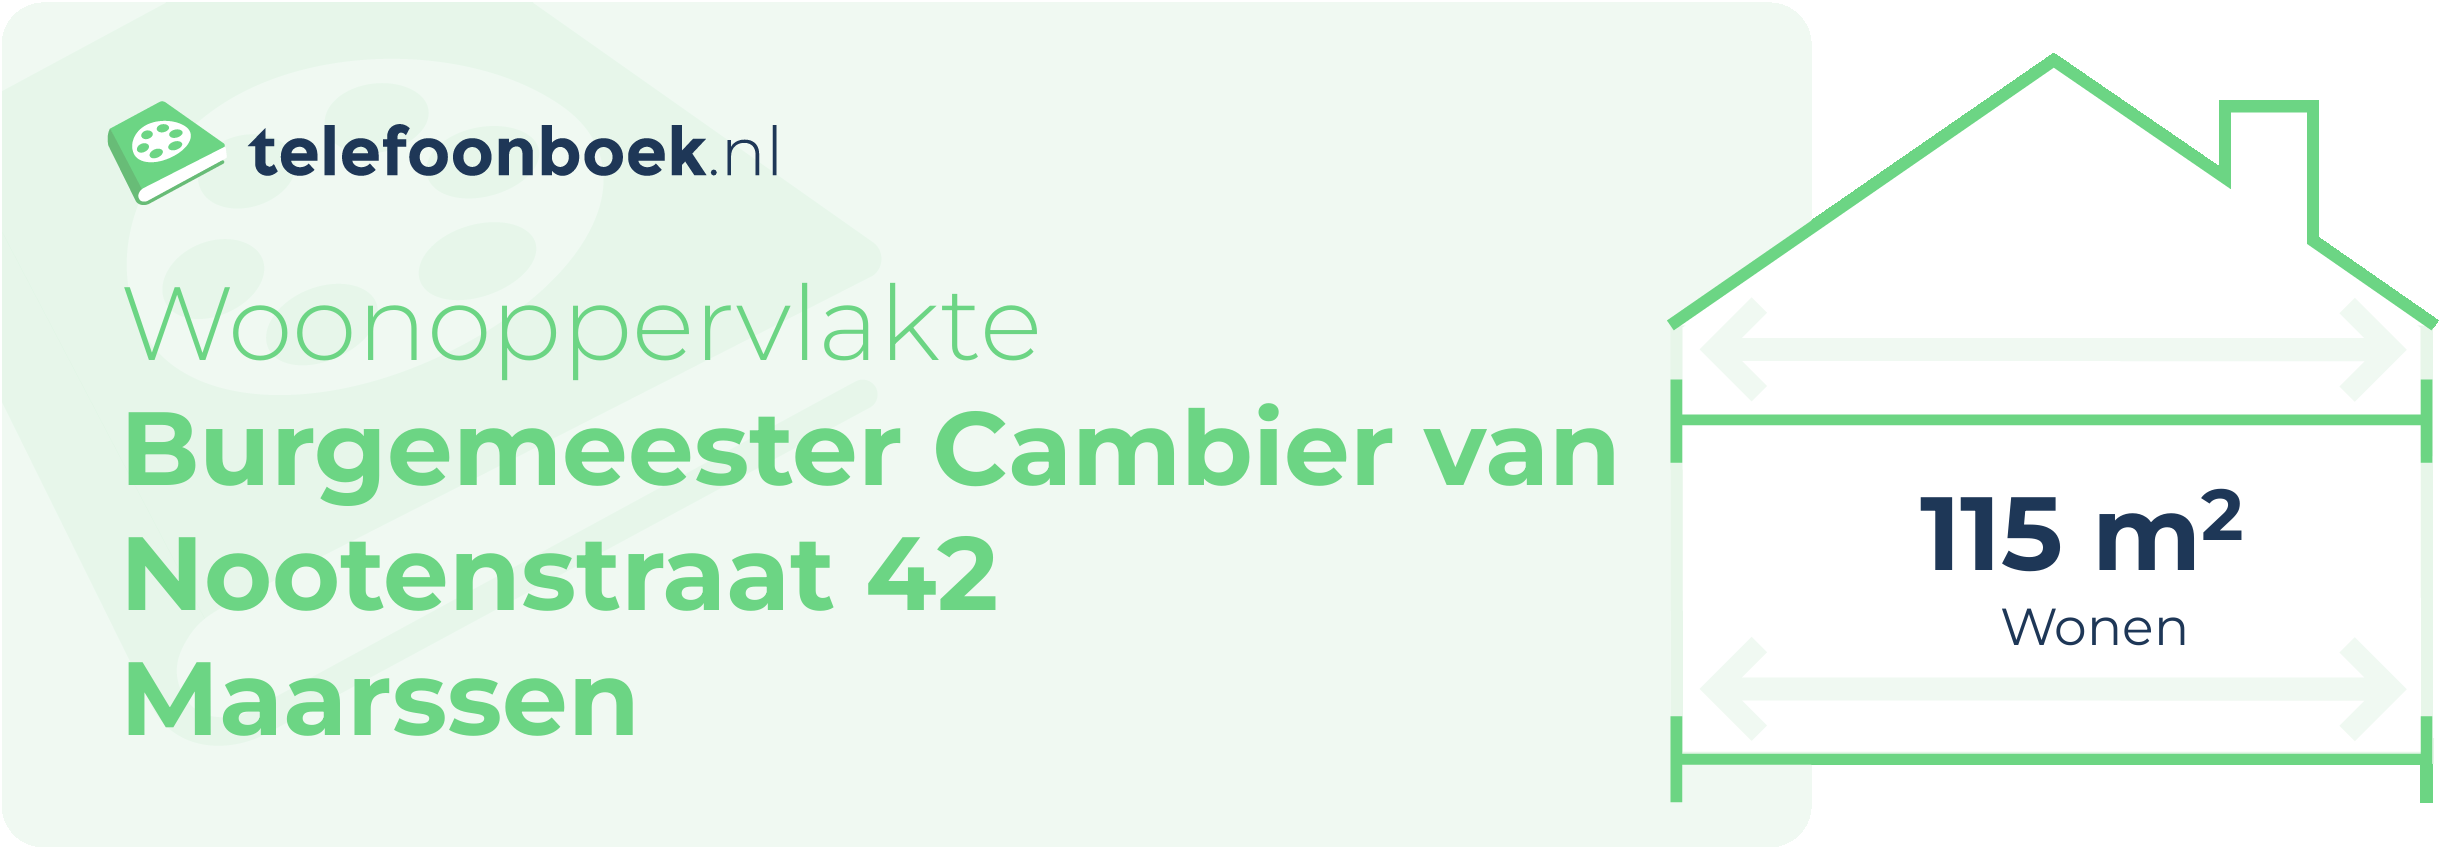 Woonoppervlakte Burgemeester Cambier Van Nootenstraat 42 Maarssen